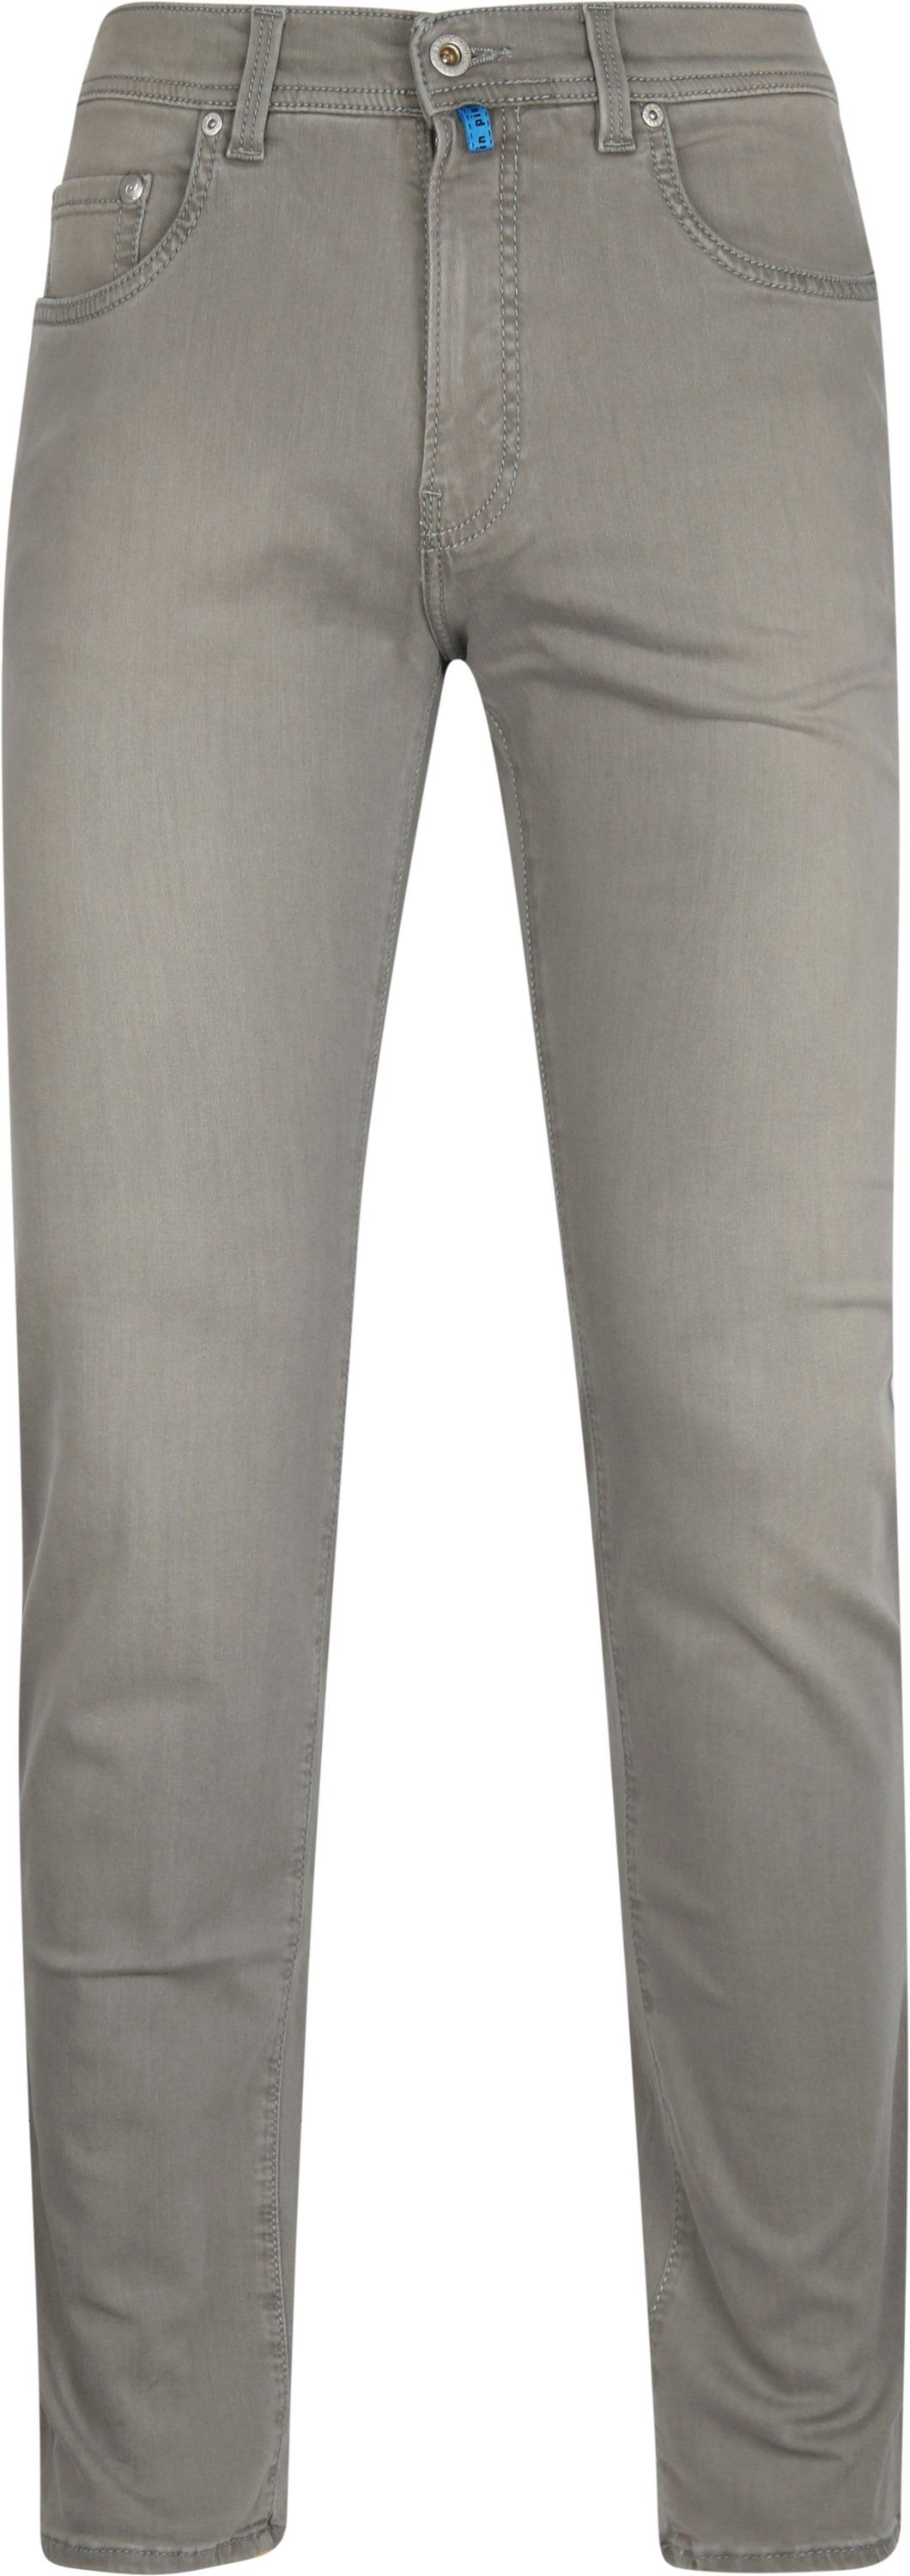 Pierre Cardin Jeans Lyon Tapered Future Flex Grey Beige size W 31